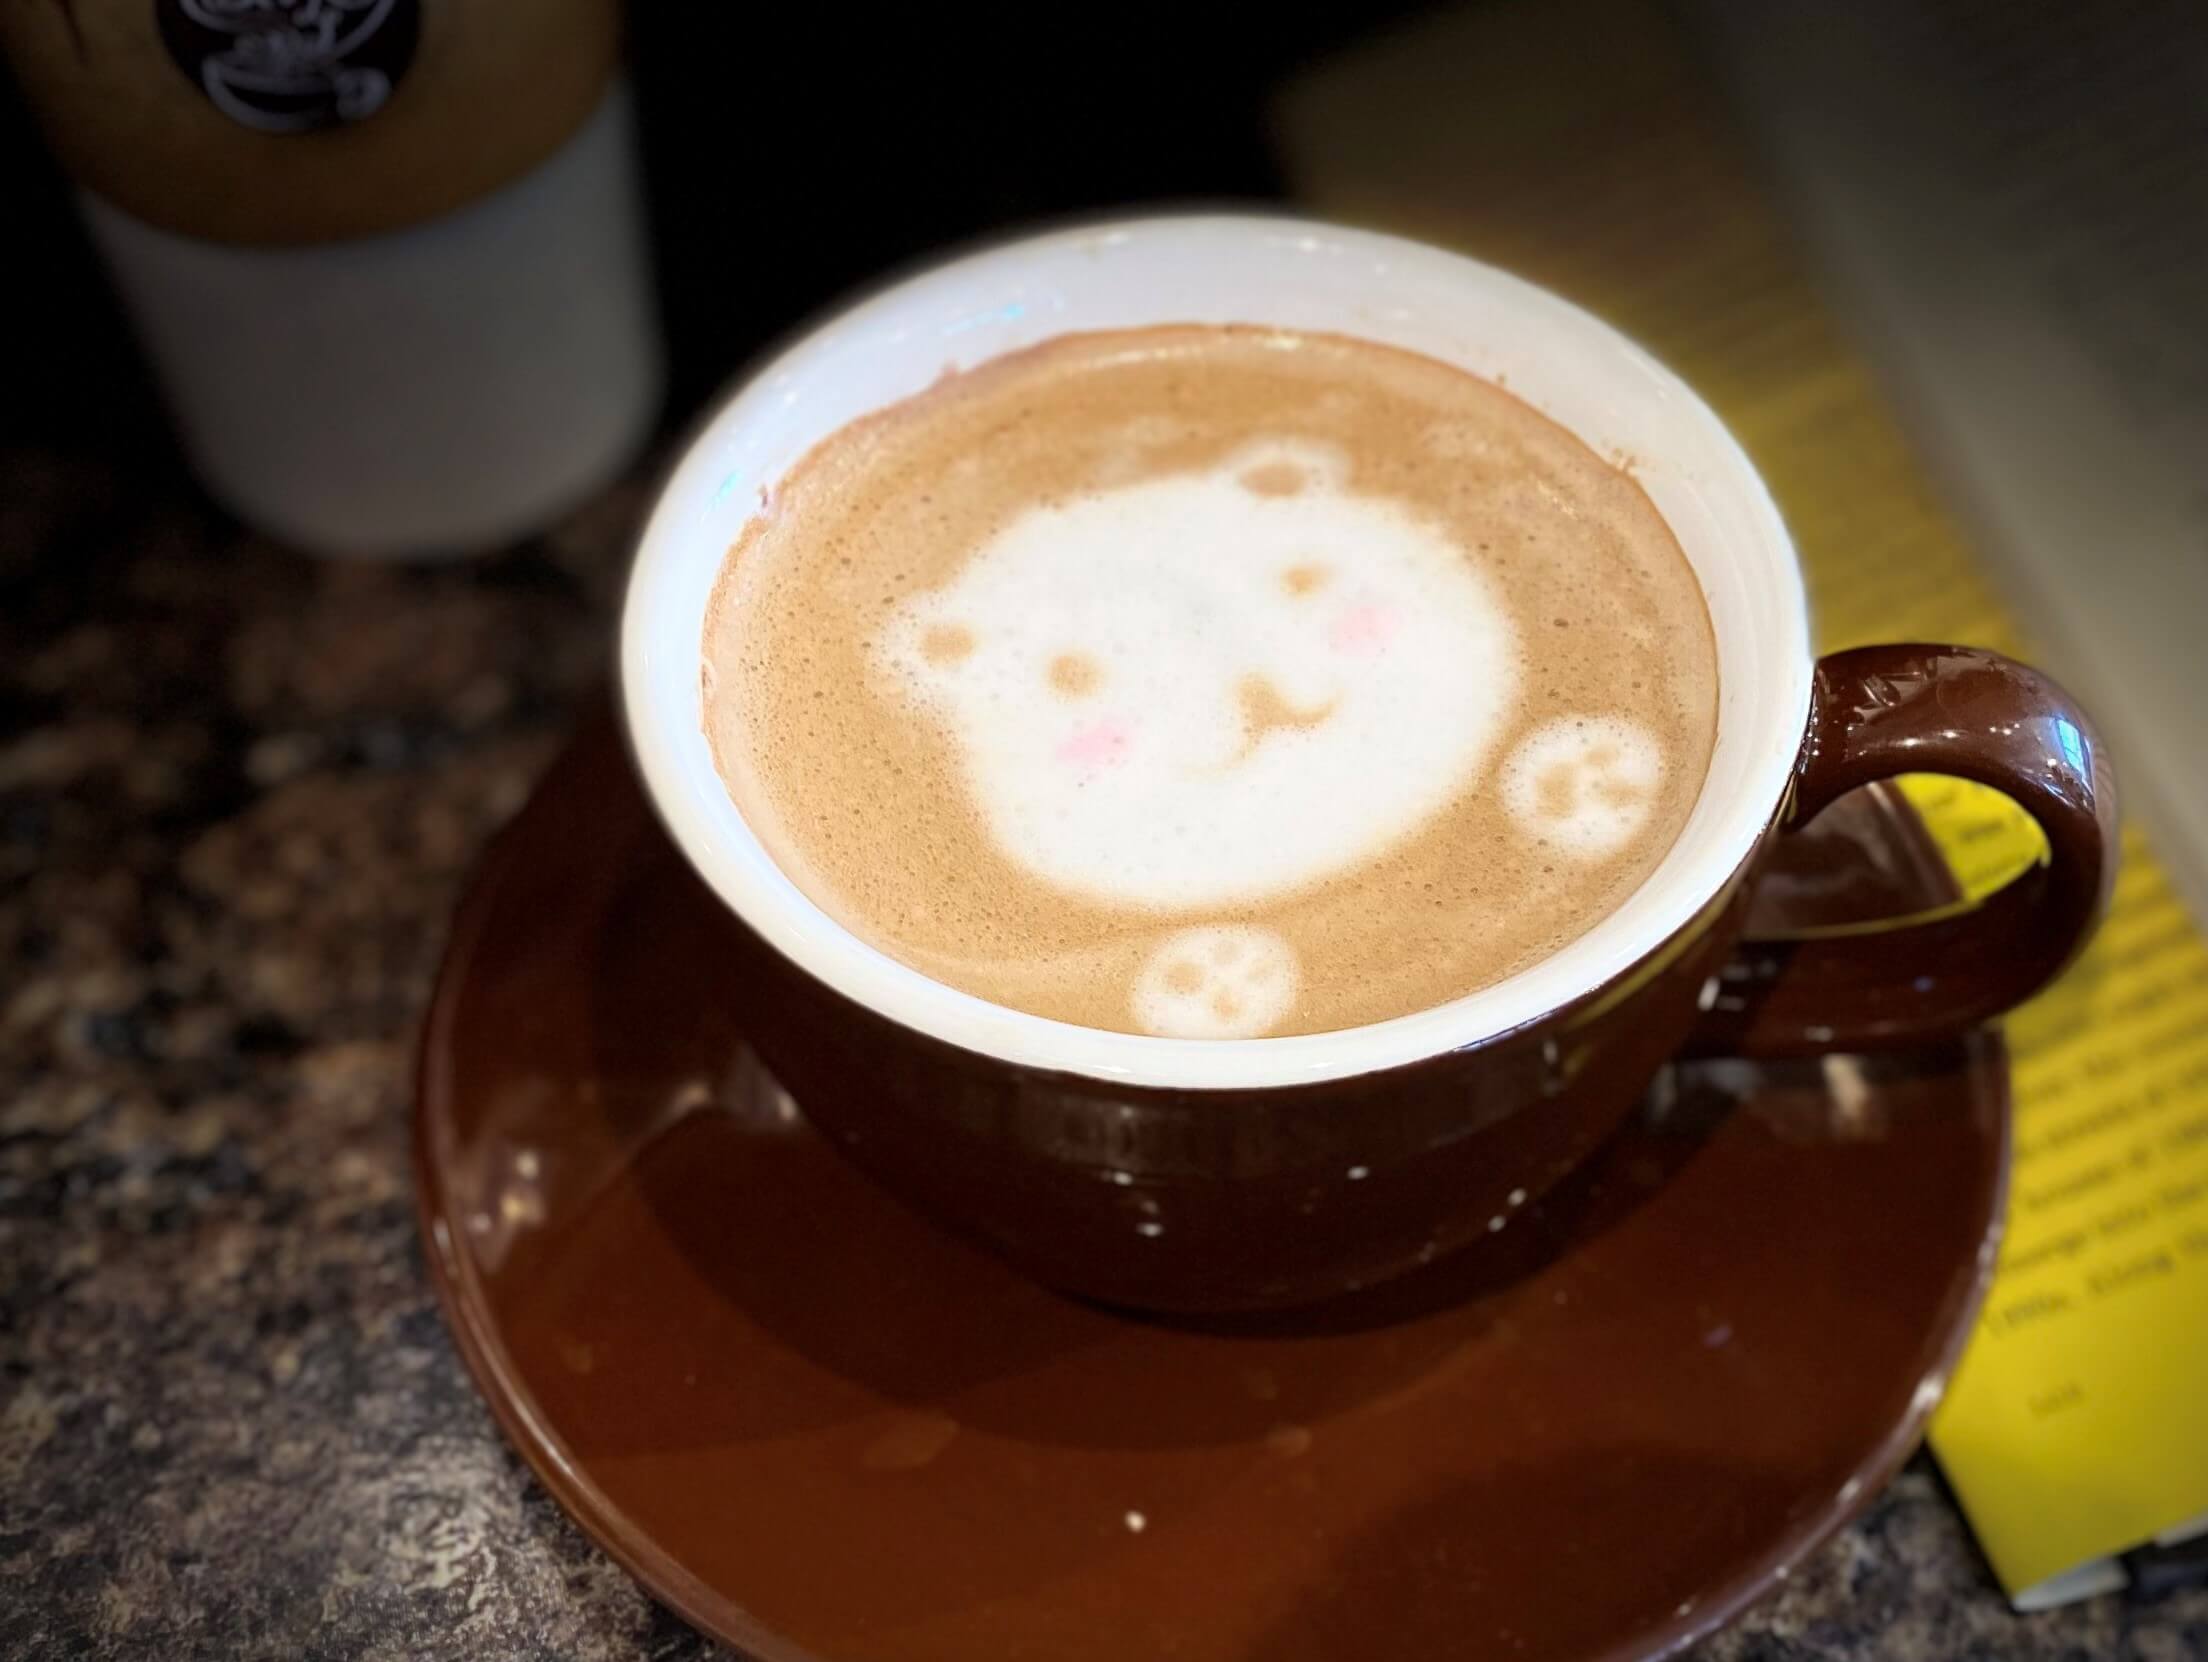 cute latte art of a bear